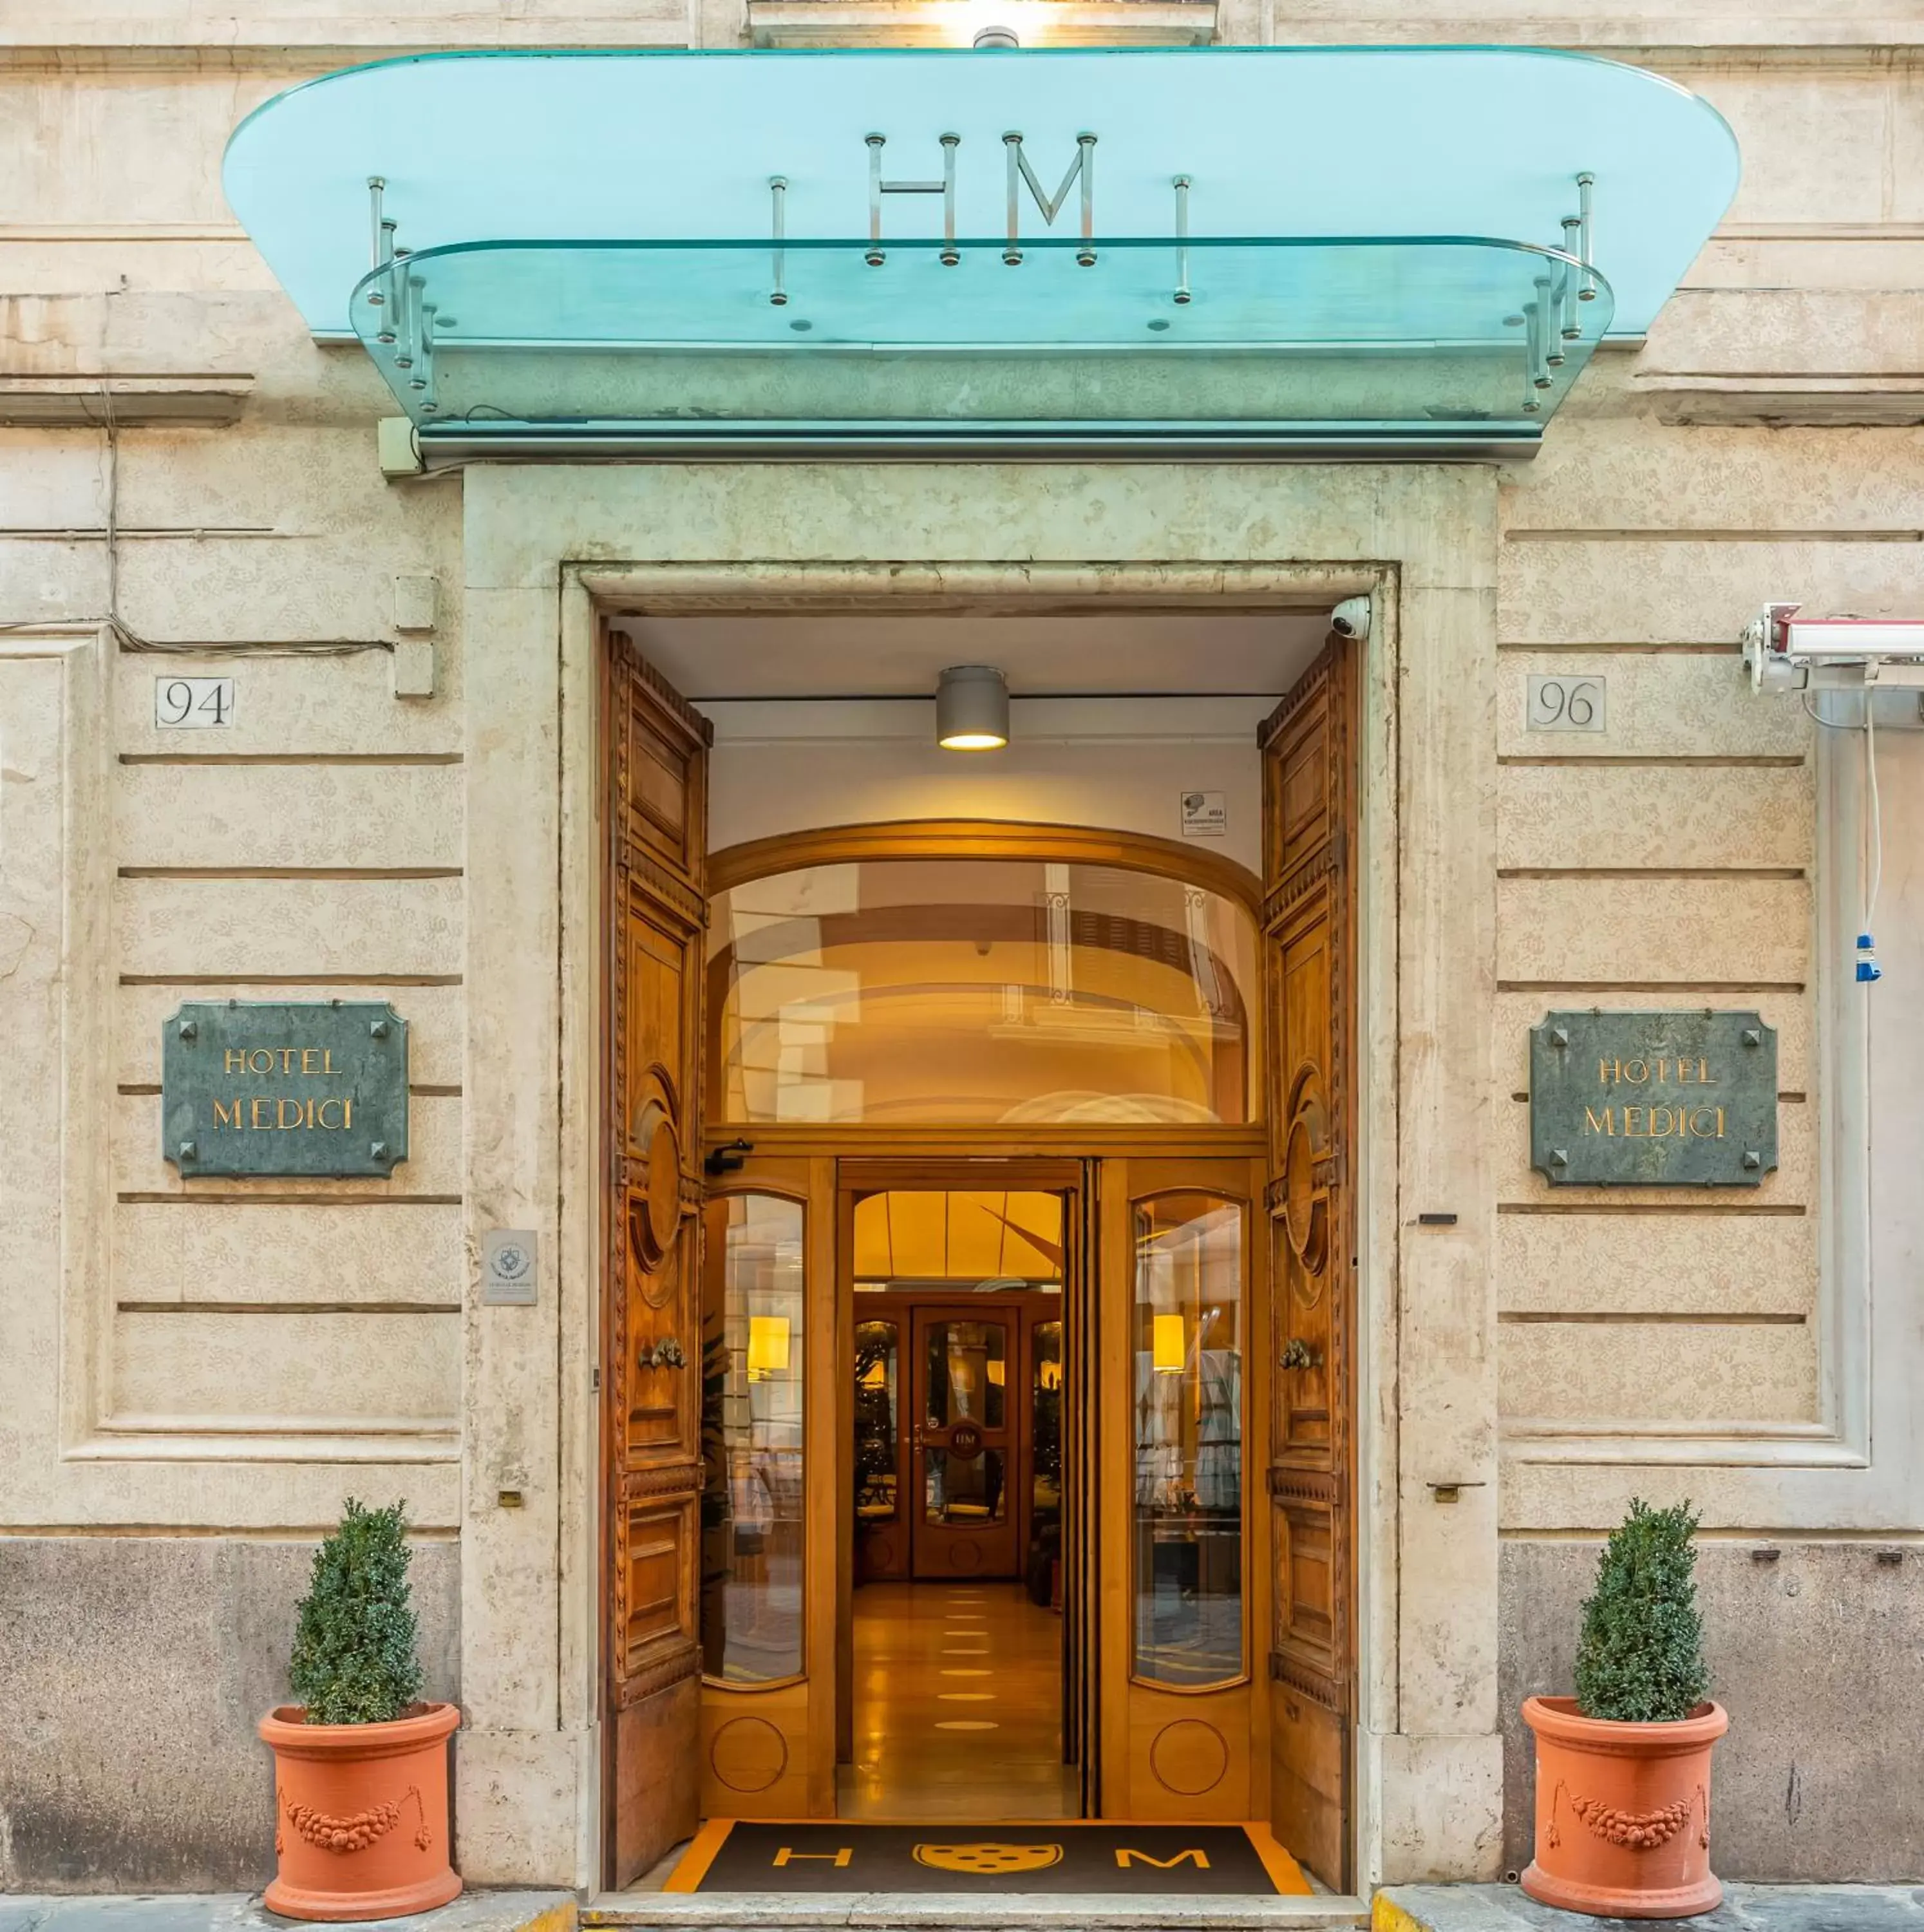 Property building, Facade/Entrance in Hotel Medici